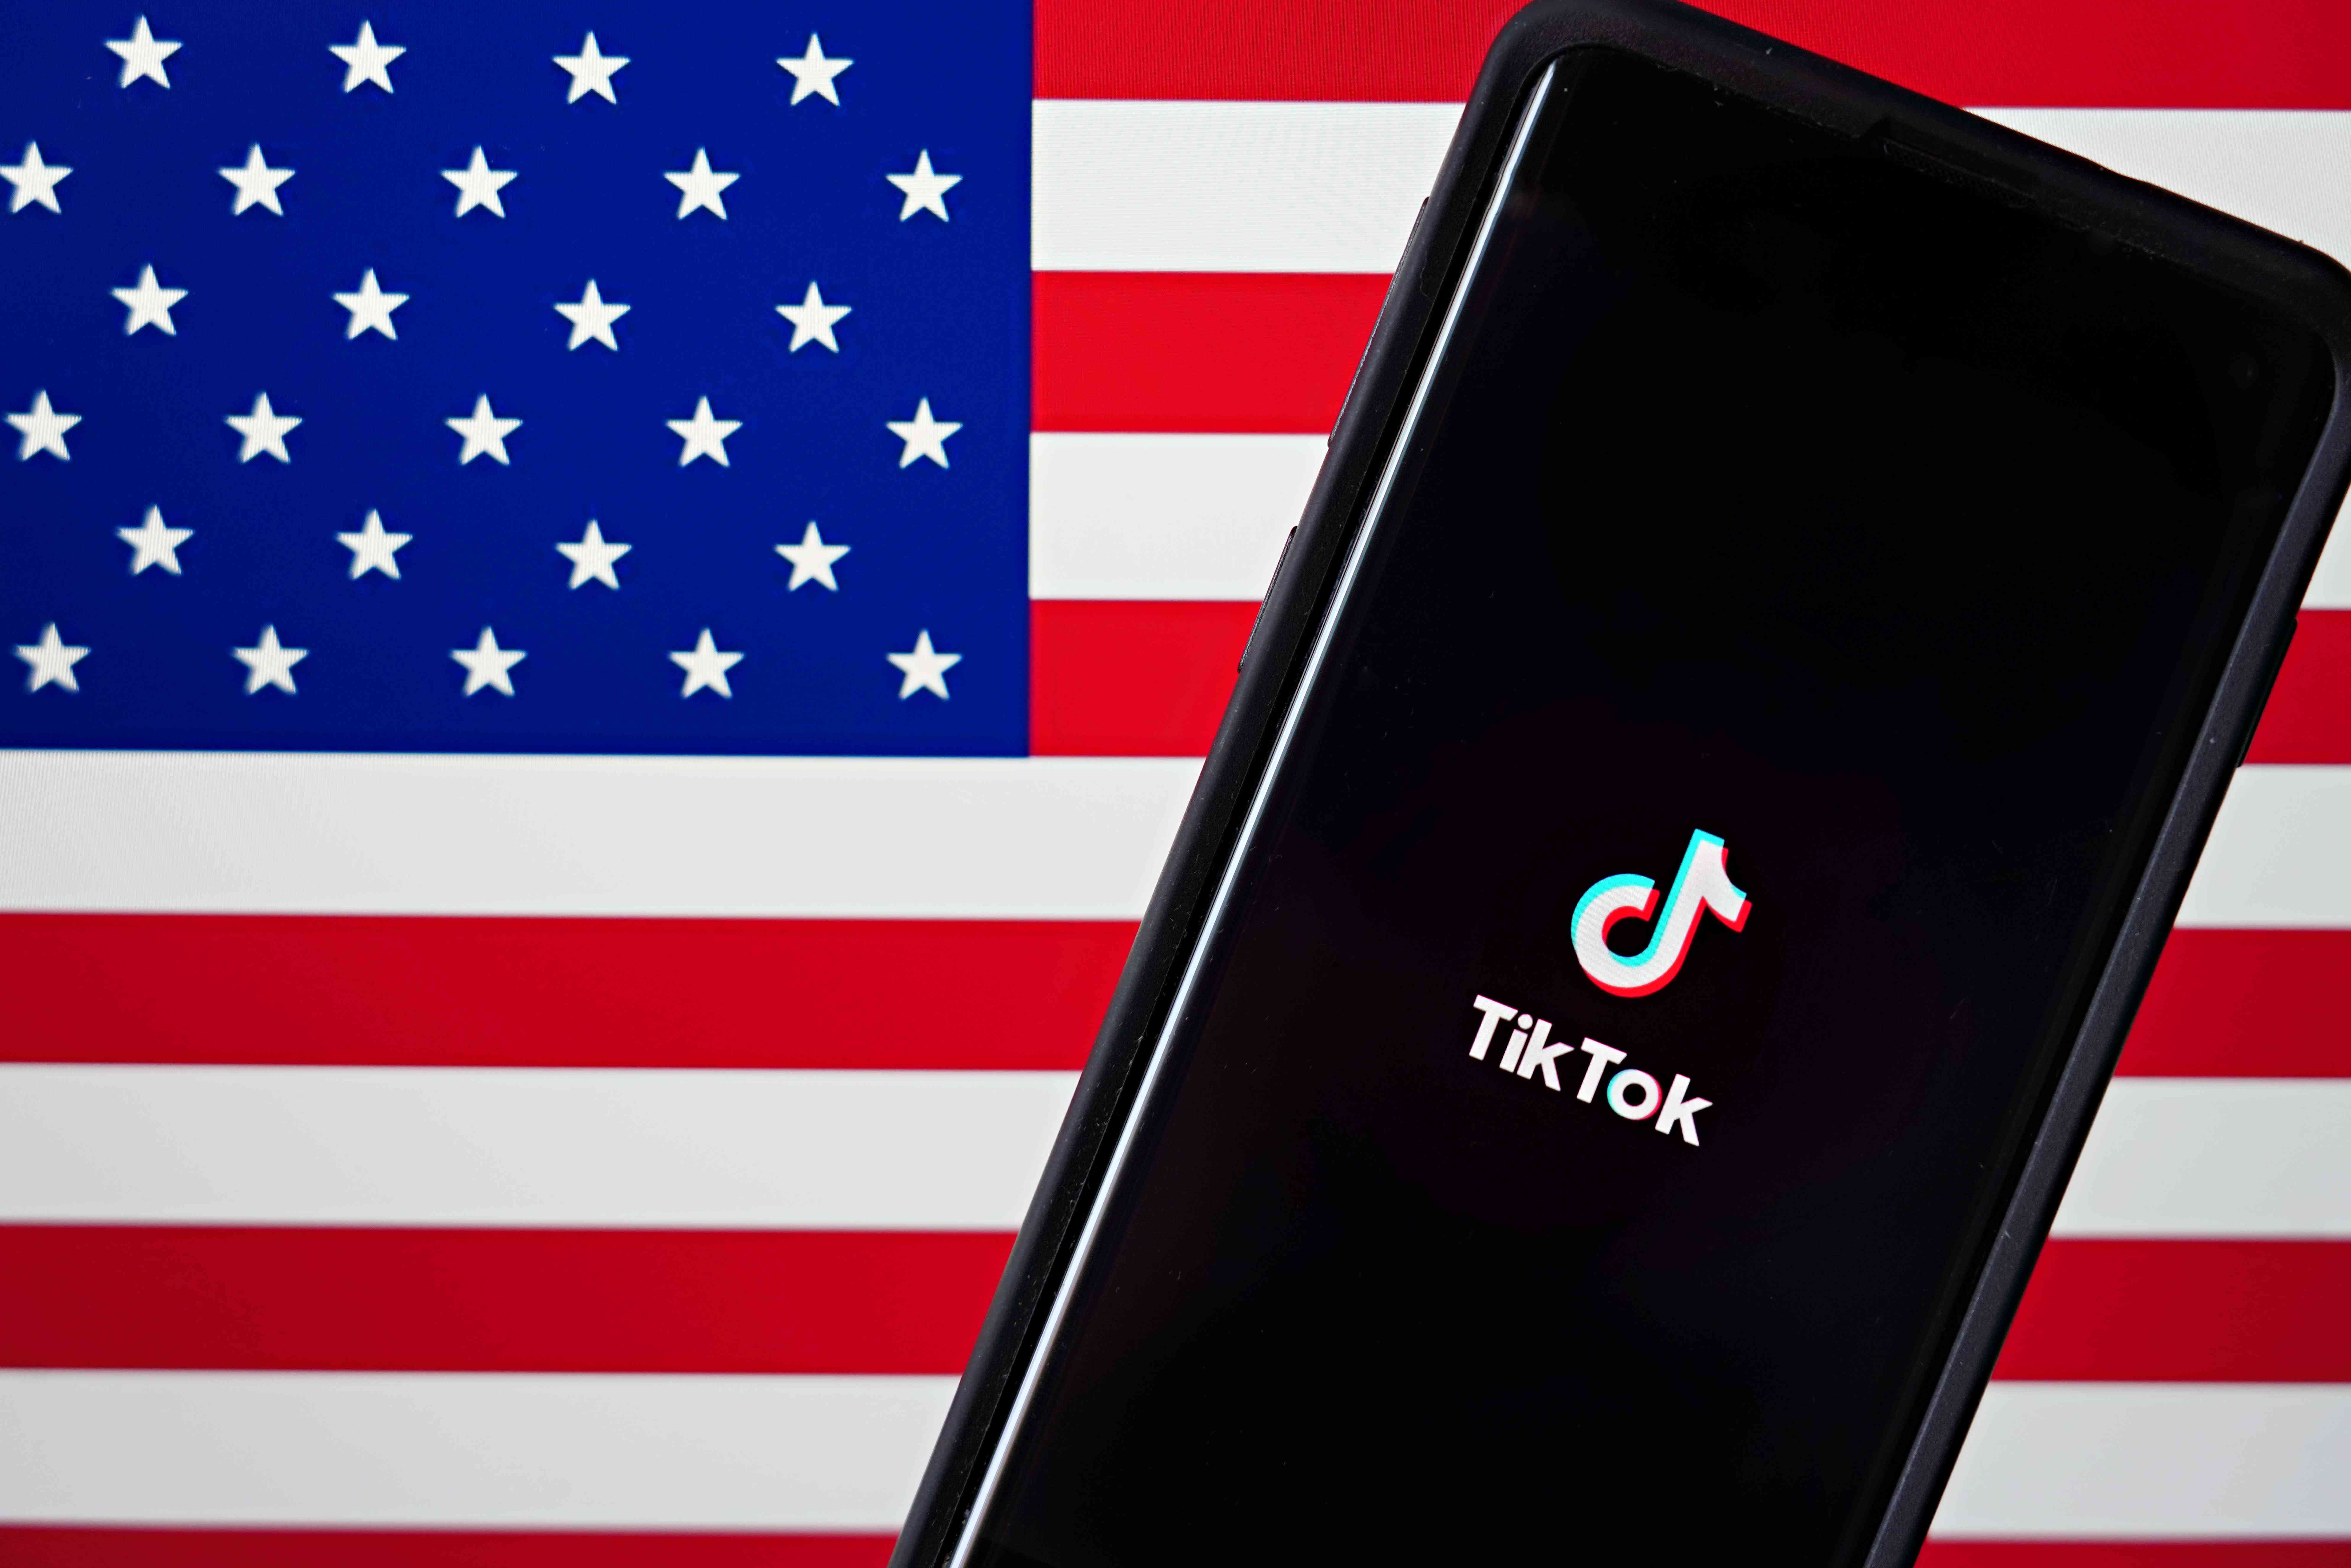 Een mobiele telefoon met de TikTok-app wordt weergegeven naast de Amerikaanse vlag